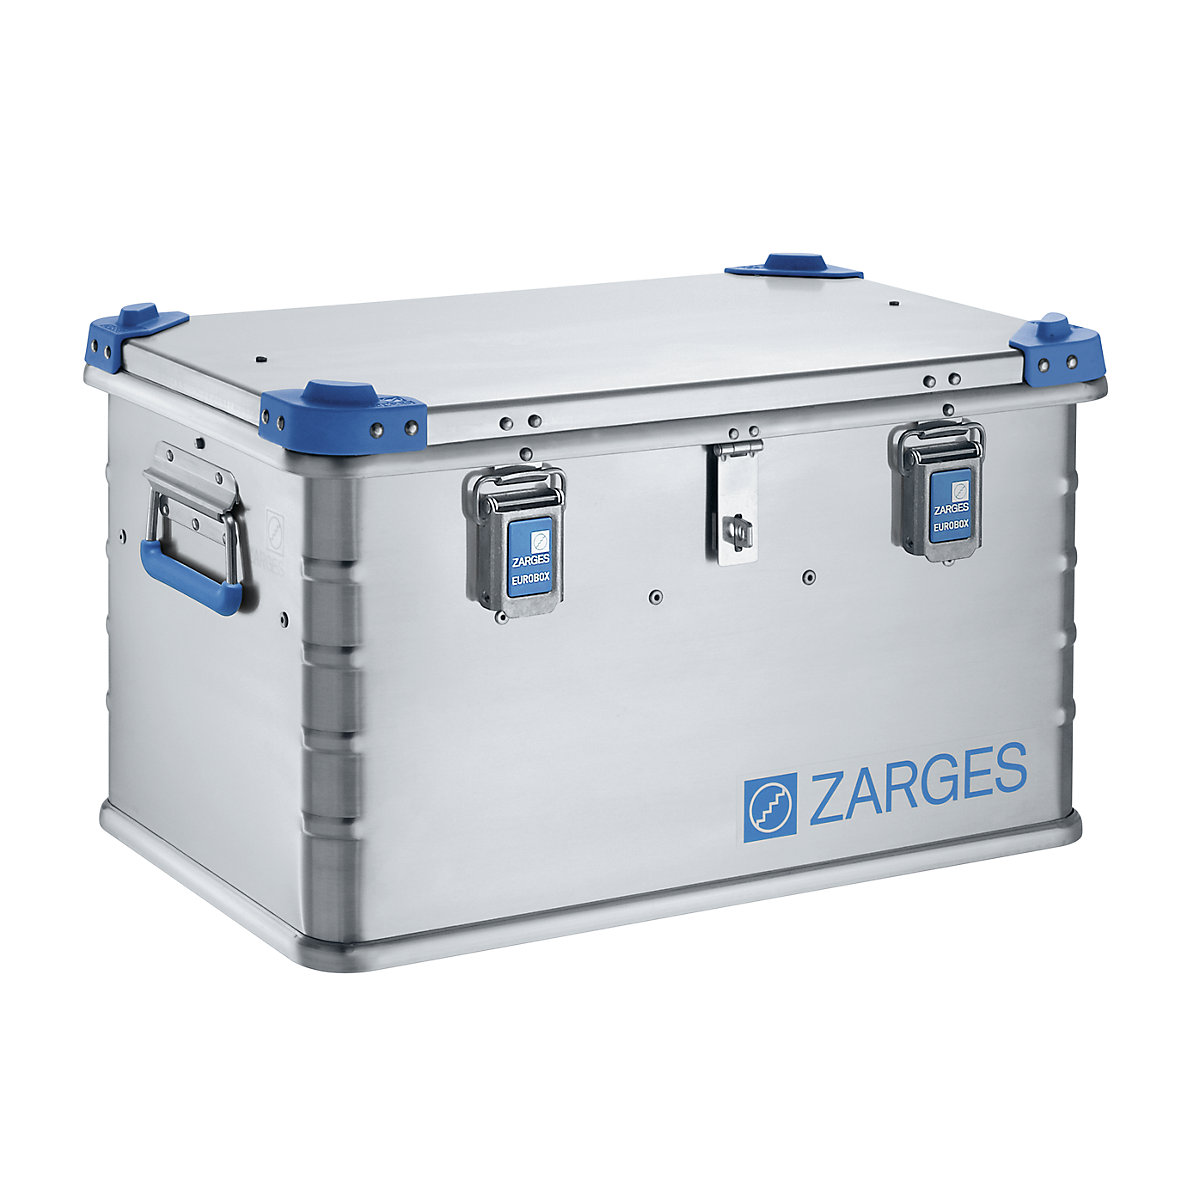 Boîte à outils alu Euro – ZARGES, empilable, capacité 60 l